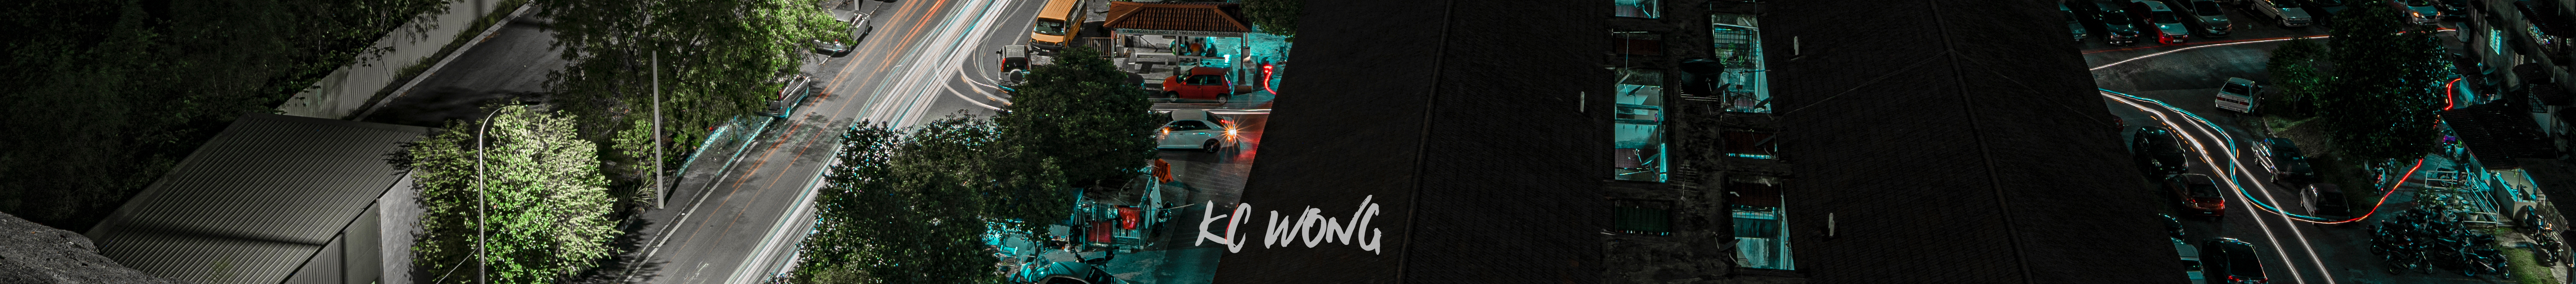 Profil-Banner von KC WONG